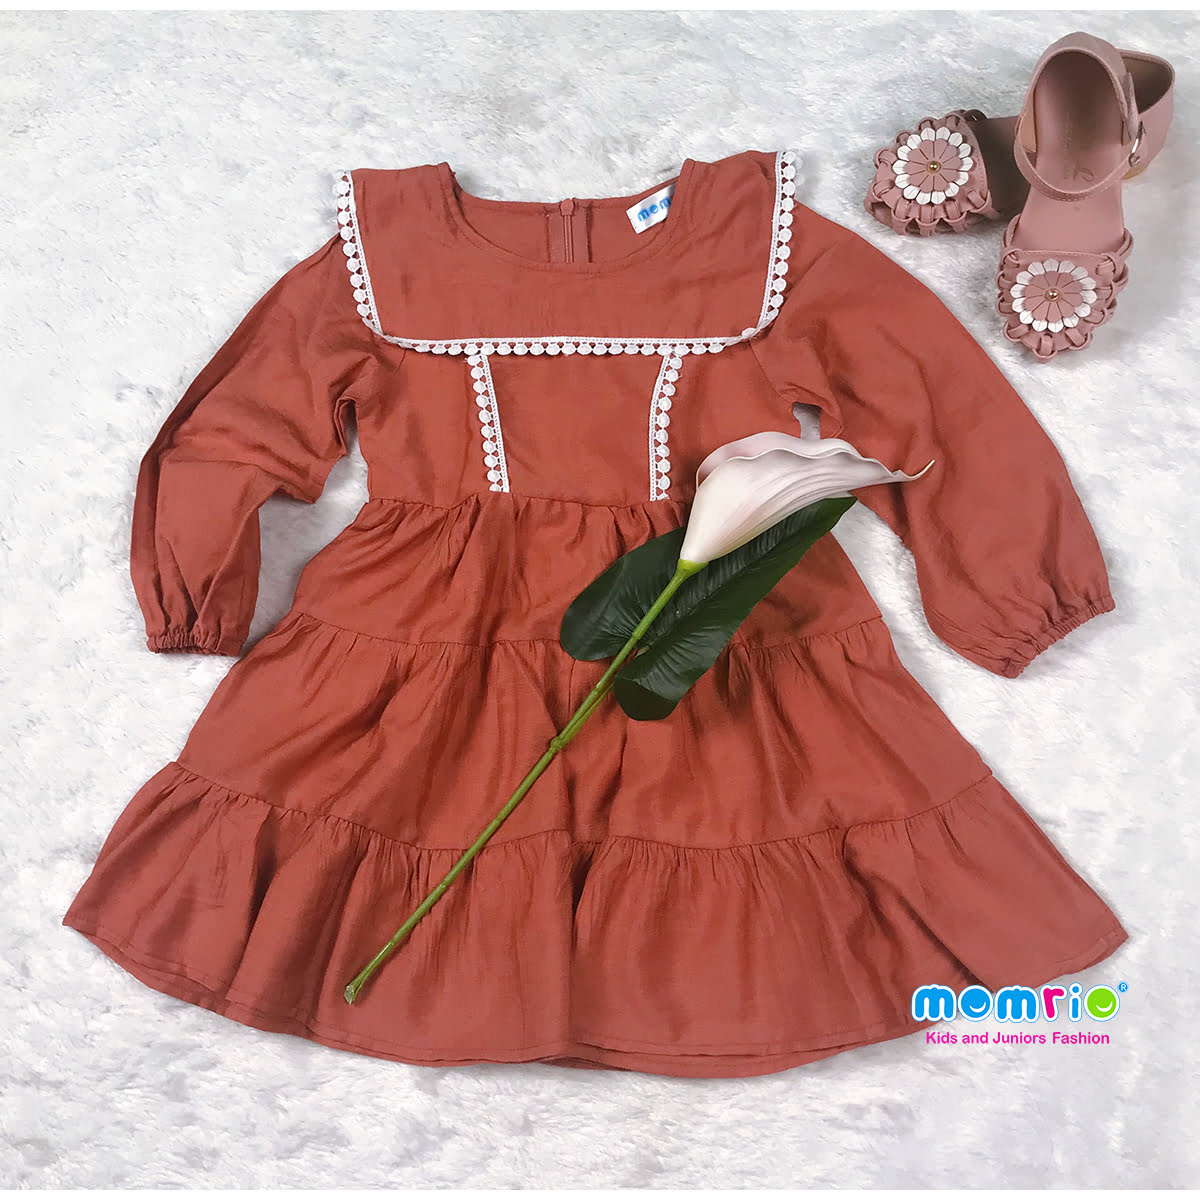 Váy cho bé gái ALBER KIDS 2 dây 3 màu phối công chúa xinh đẹp cho trẻ em  23456789101112 tuổi V25 - MixASale